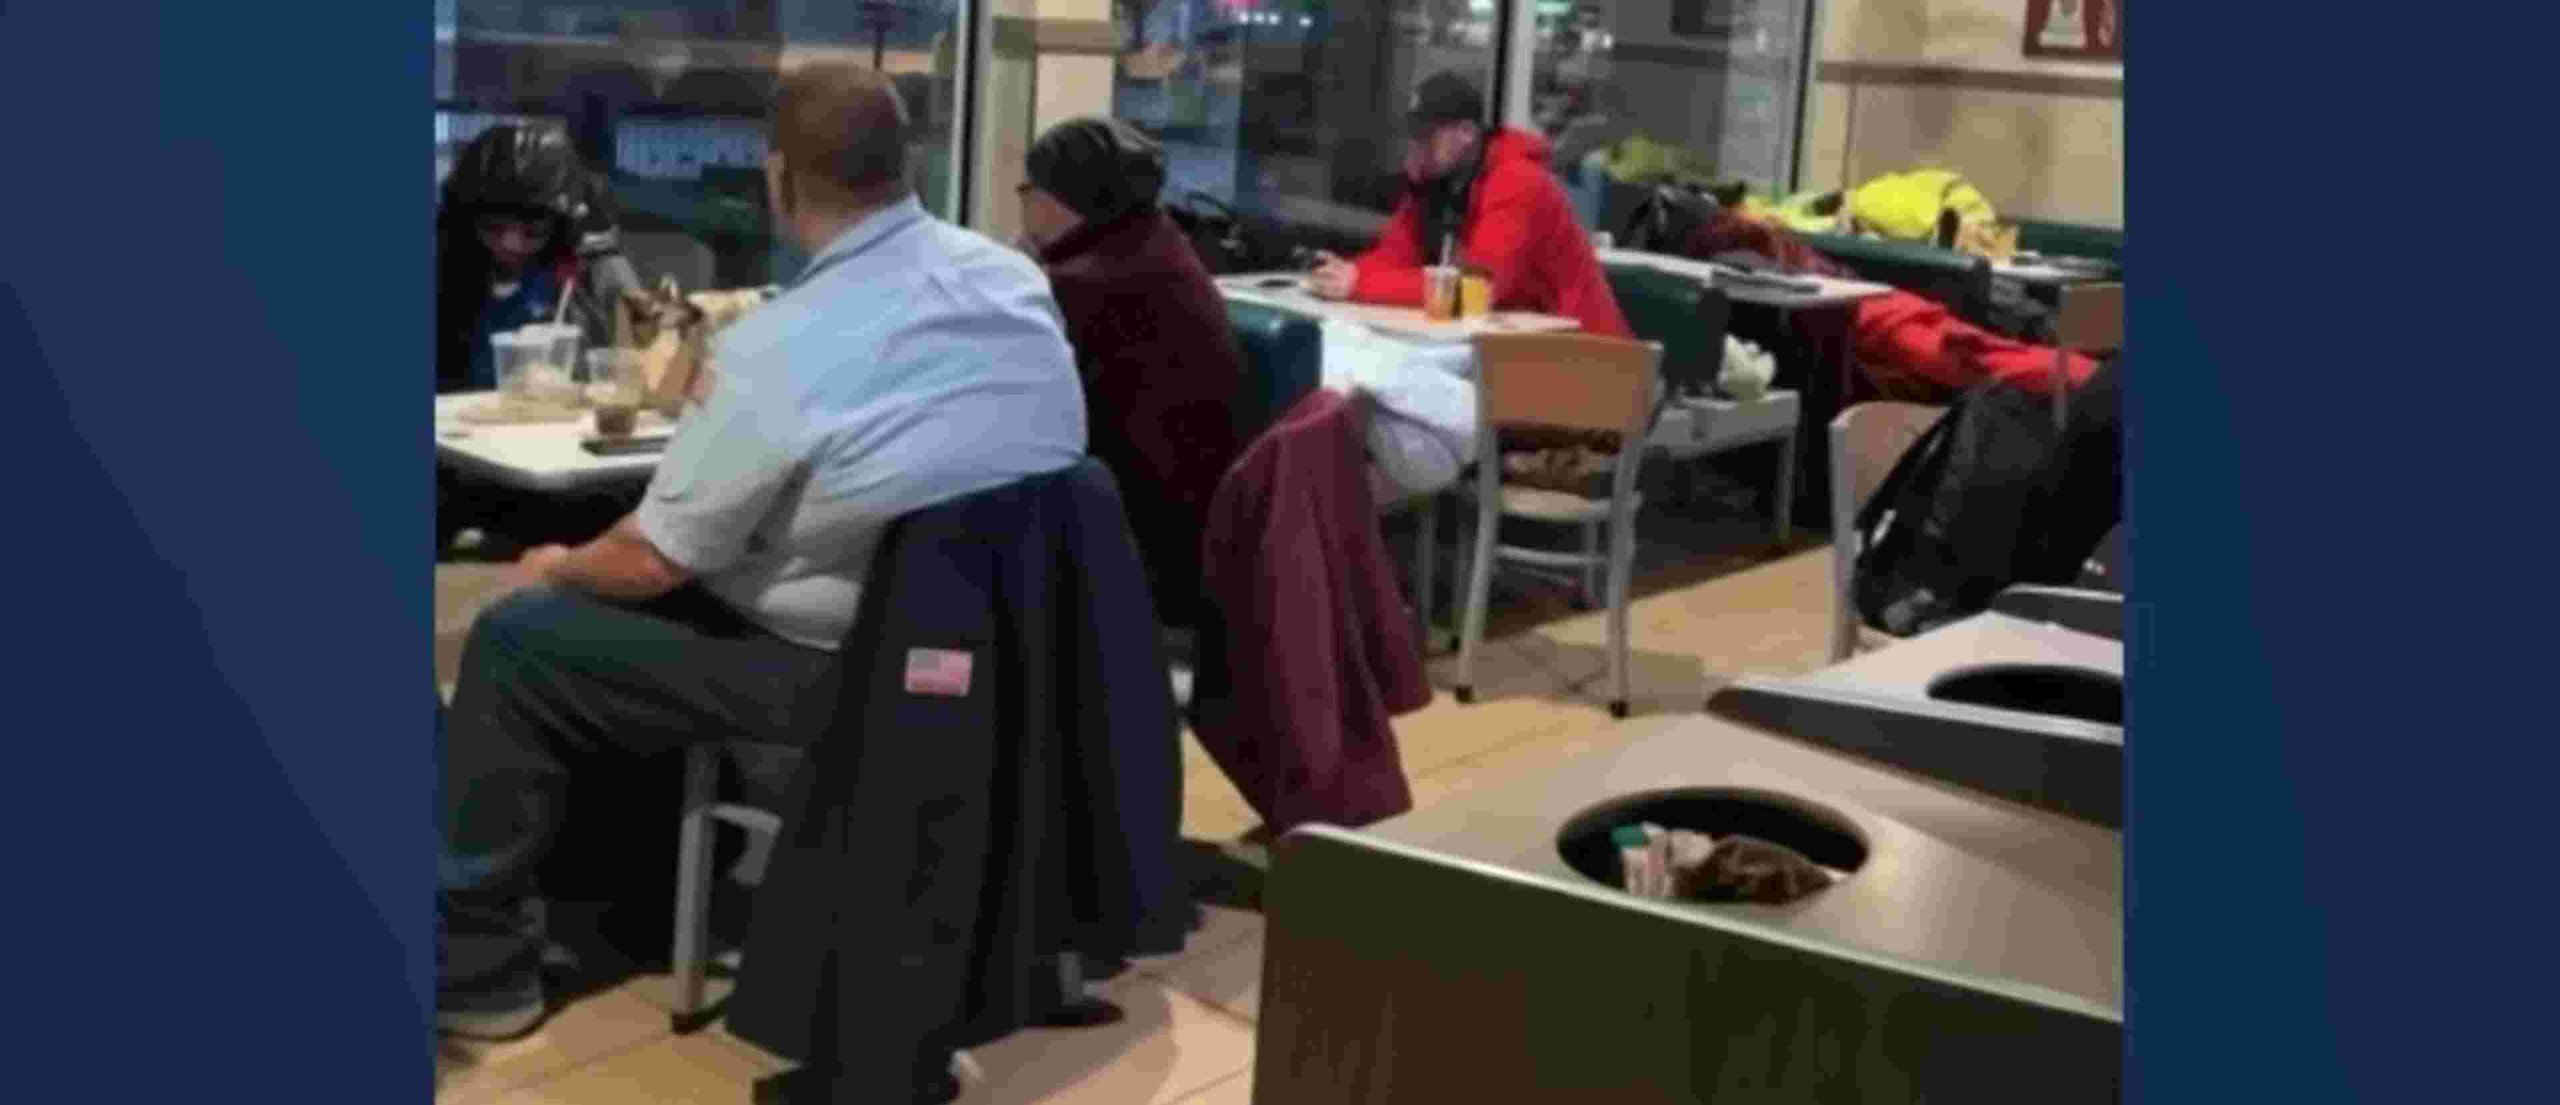 Pekerja McDonald’s Membuka Restorannya sebagai Tempat Penampungan Badai 24 jam Selama Blizzard di Timur Laut